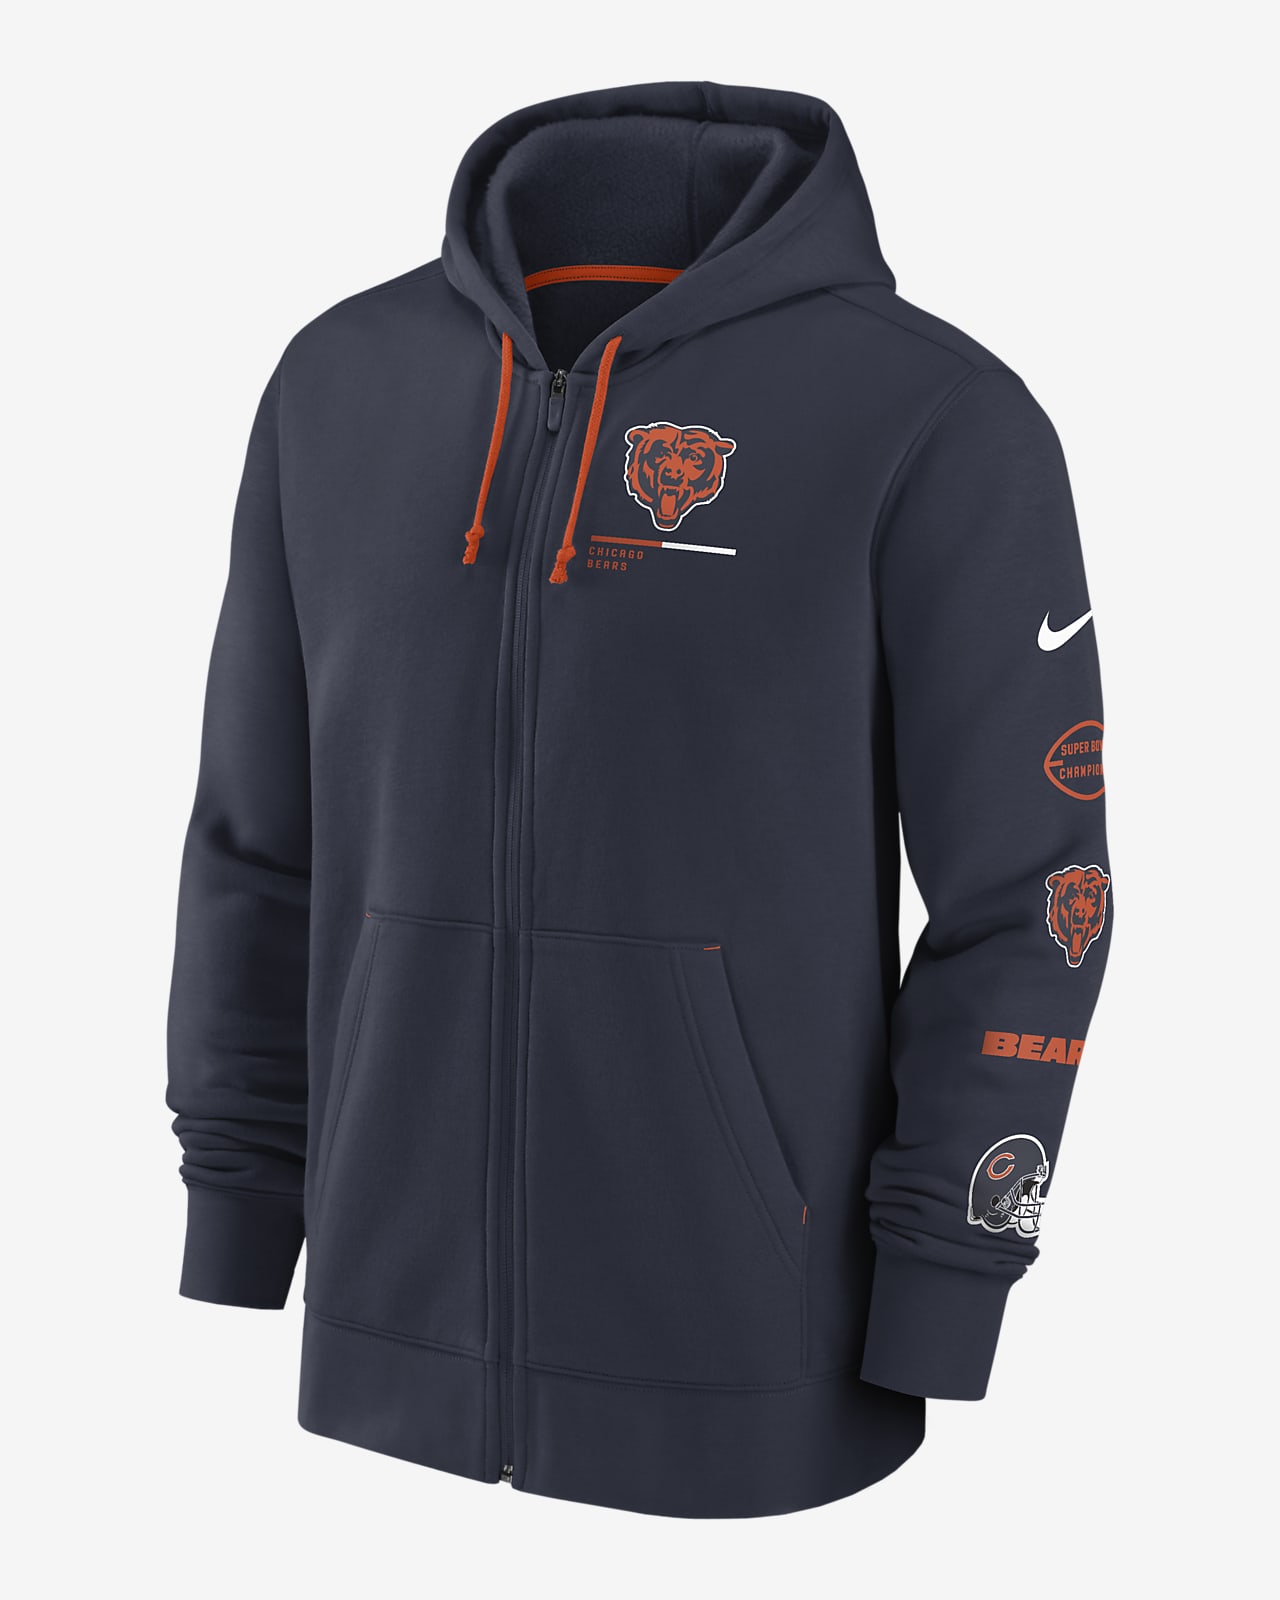 Nike Team Surrey (NFL Chicago Bears) Men's Full-Zip Hoodie